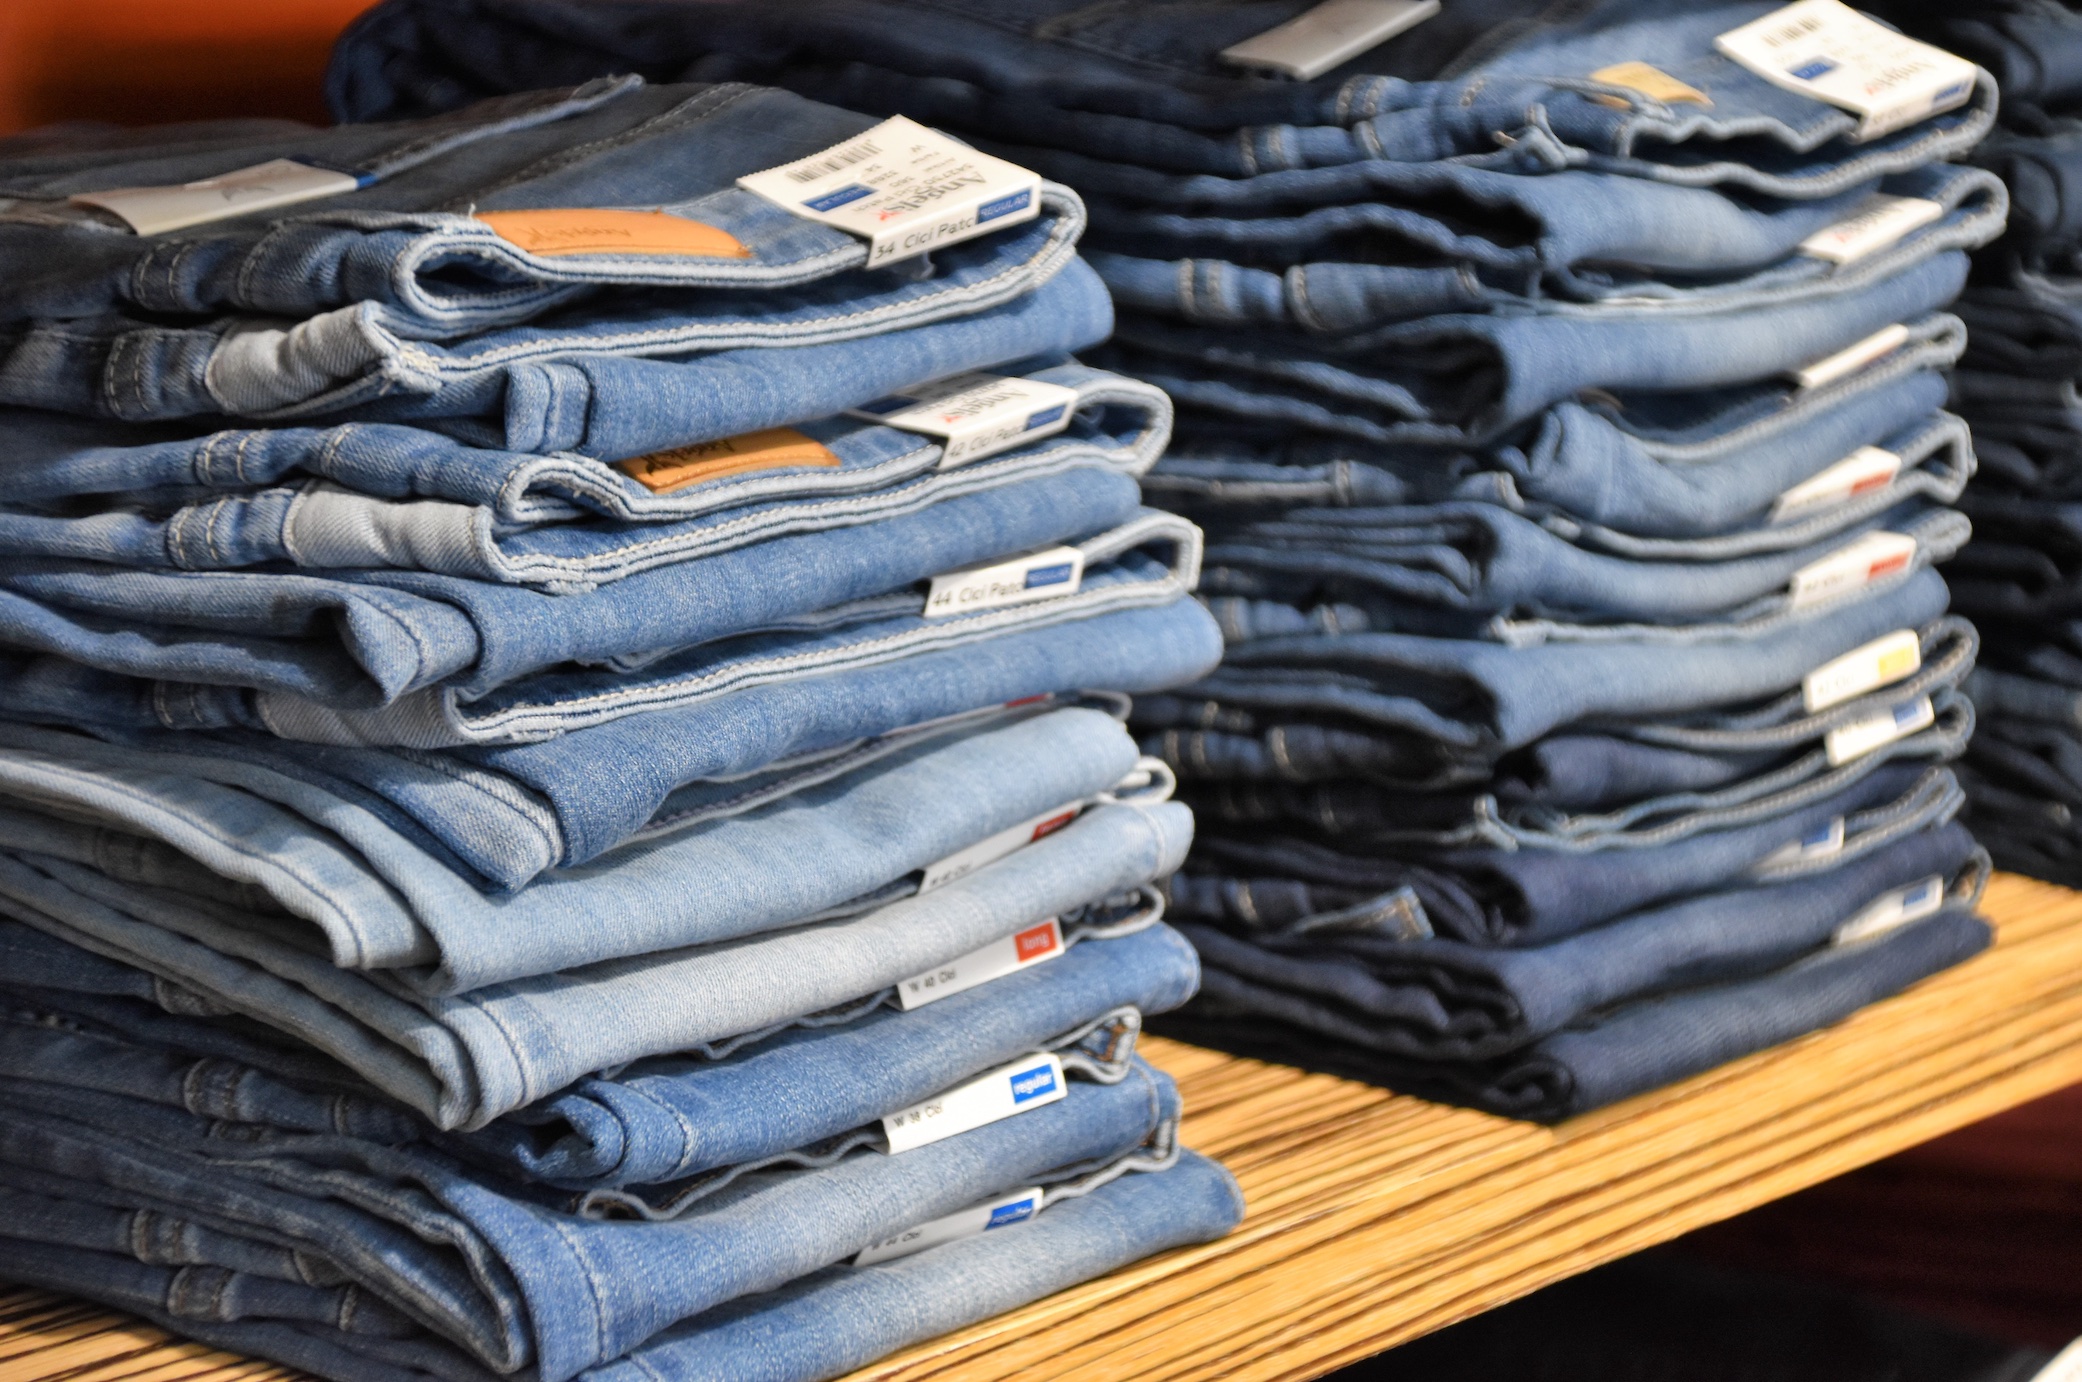 Stacks of blue jeans; image by Waldemar Brandt, via Unsplash.com.